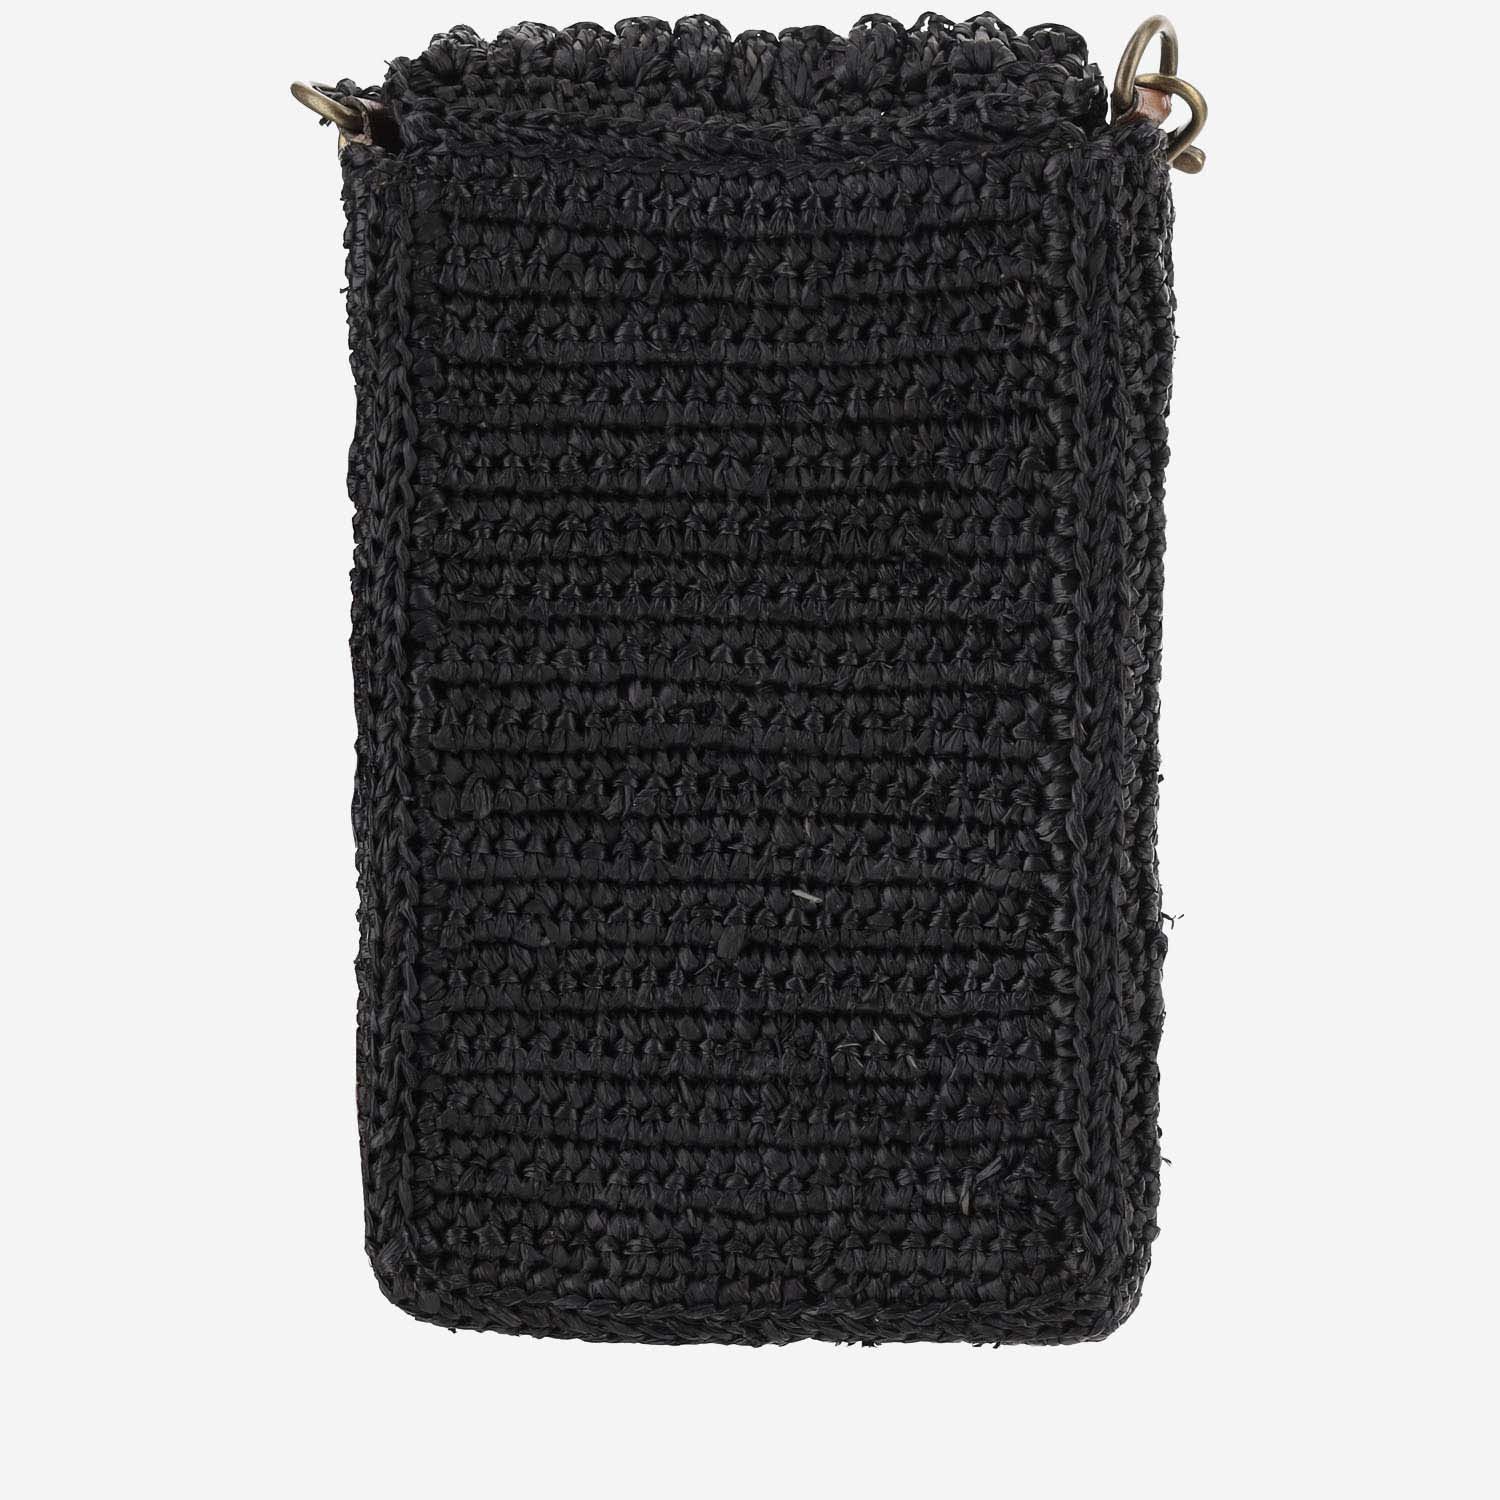 Shop Ibeliv Raffia Bag With Leather Details In Black